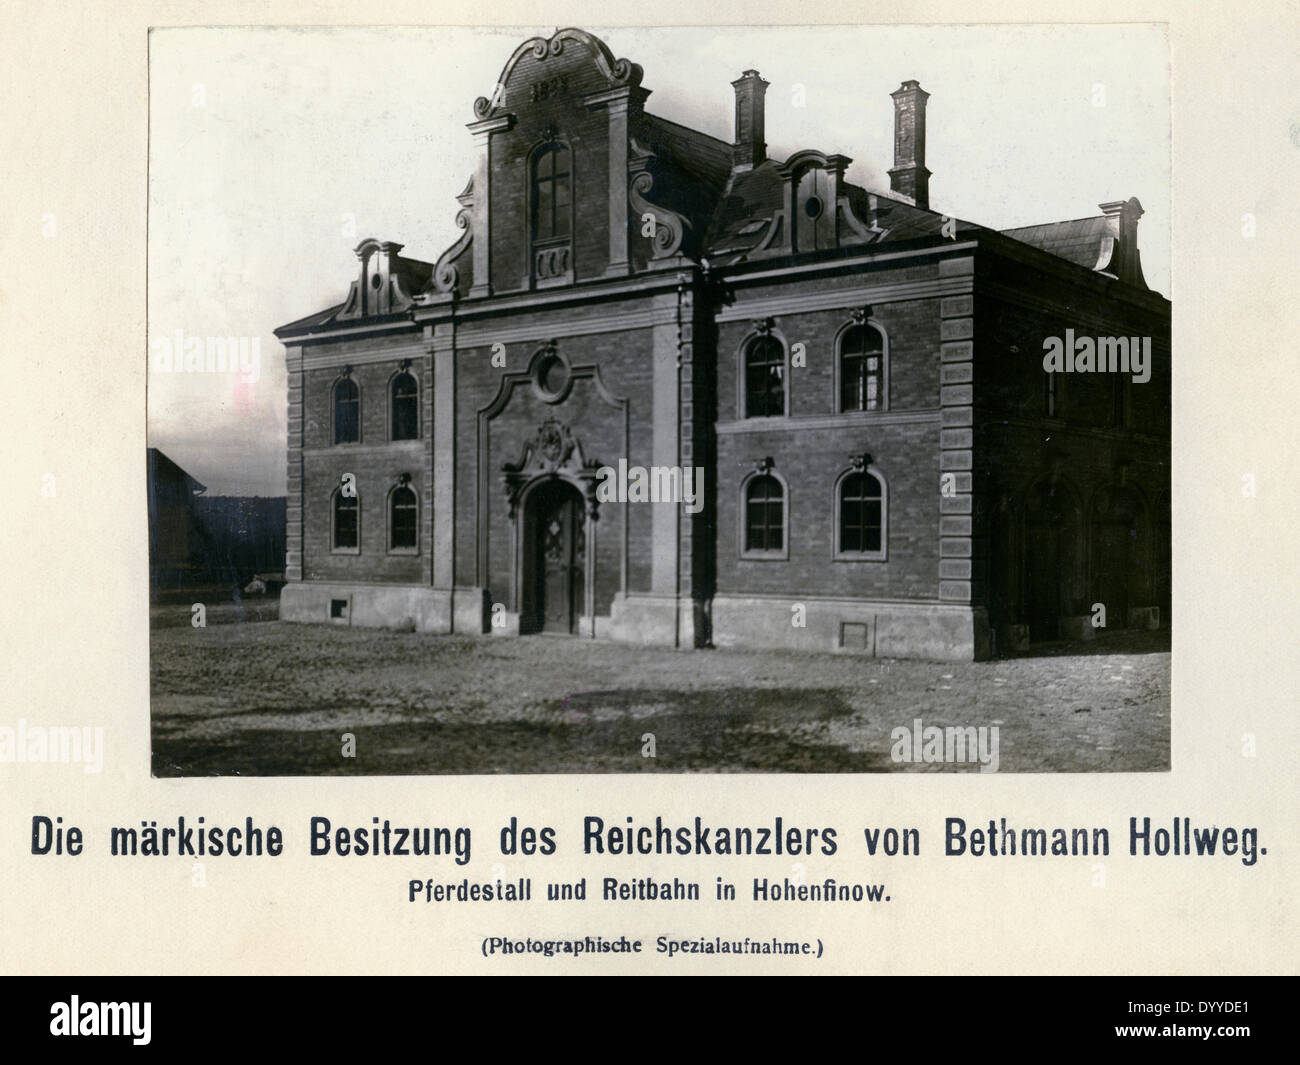 Nachlass von Theobald von Bethmann-Hollweg in Hohenfinow, 1909 Stockfoto